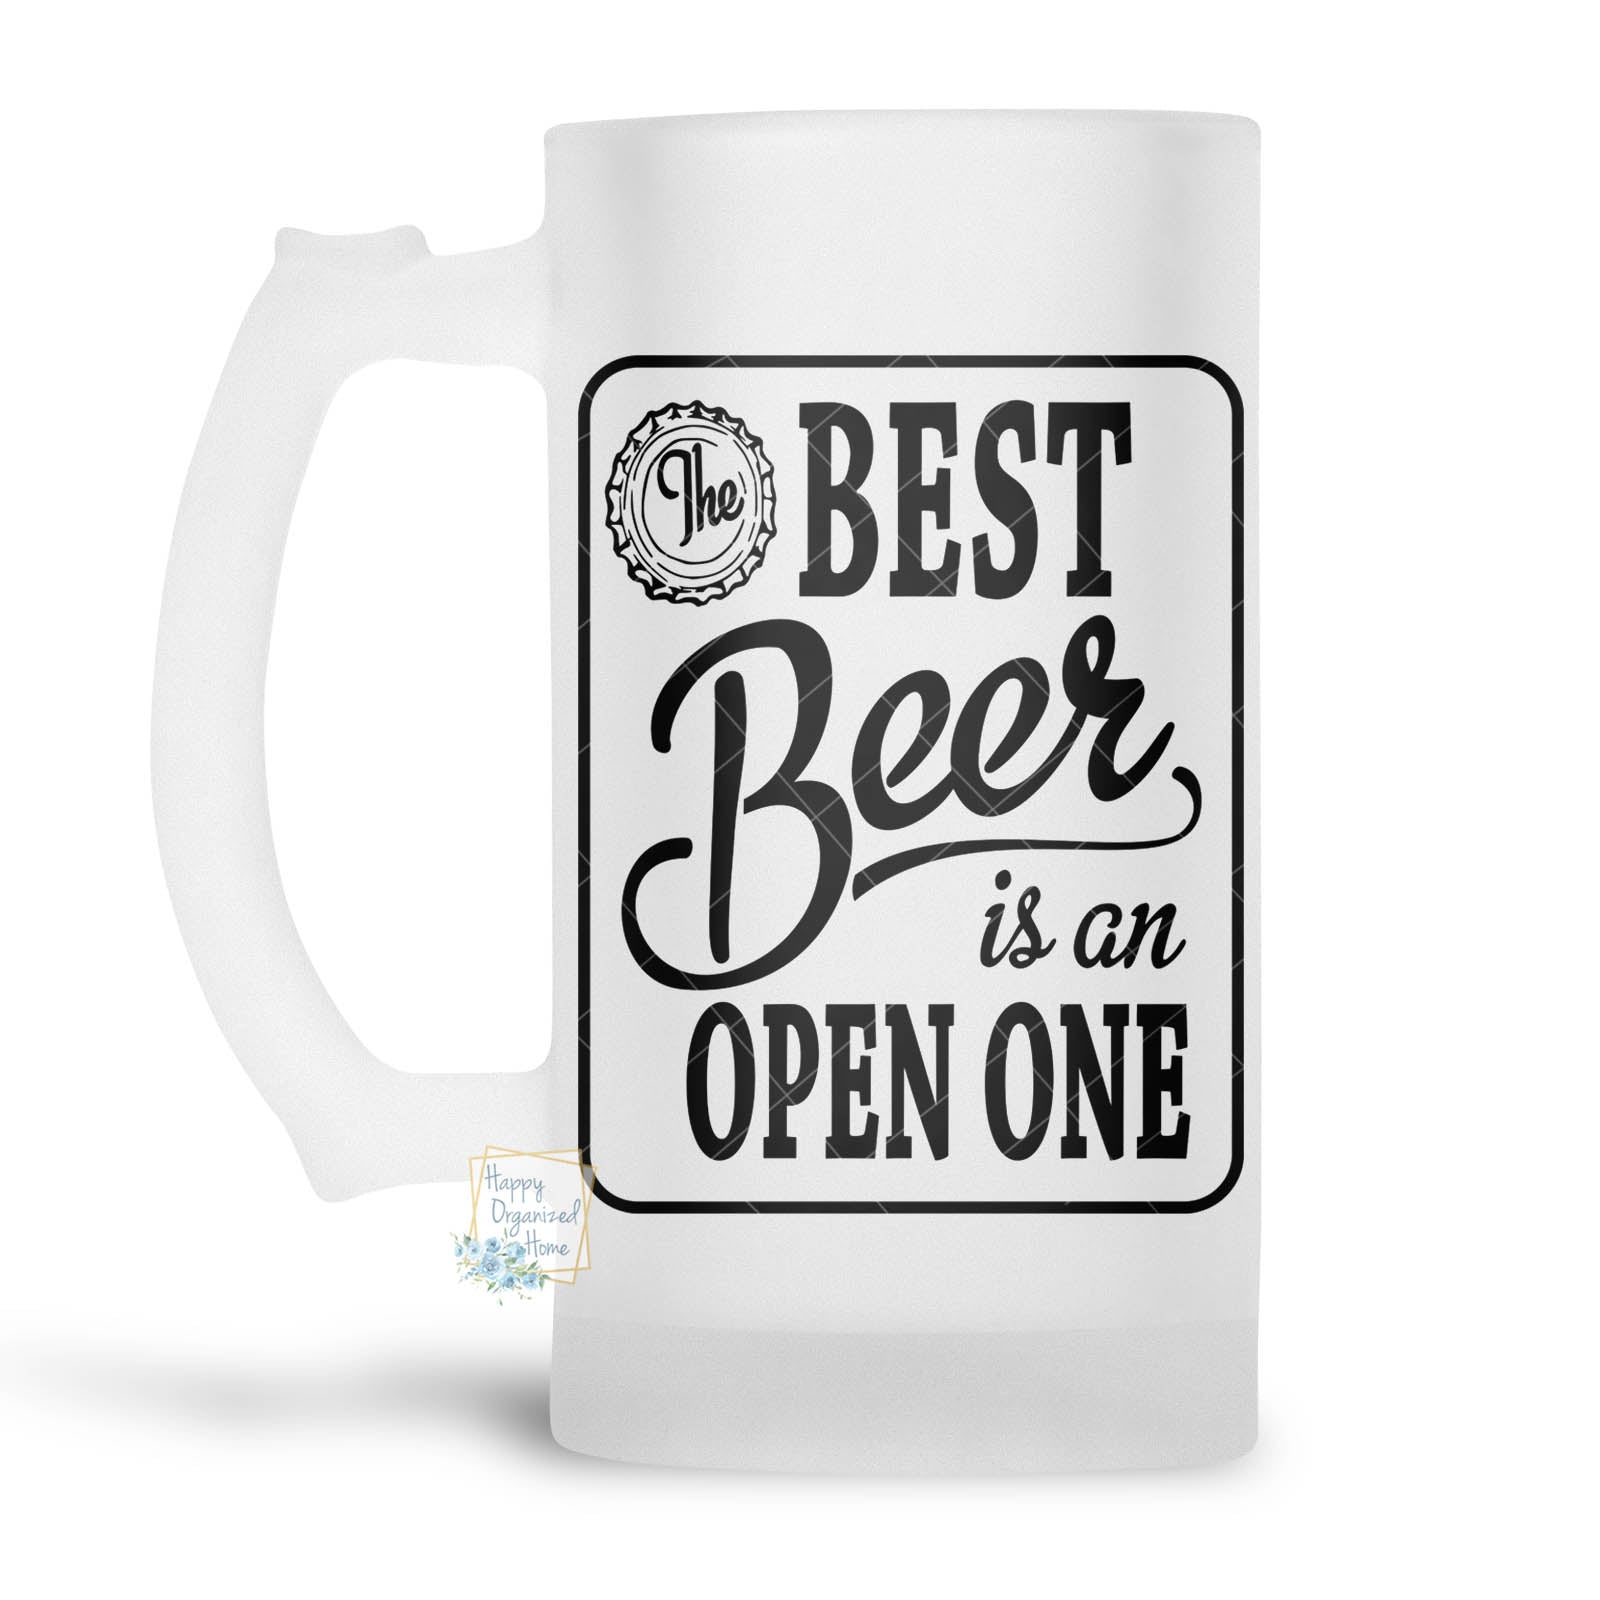 The Best Beer is an open one- Beer Stein, Beer Mug, Printed Beer Mug